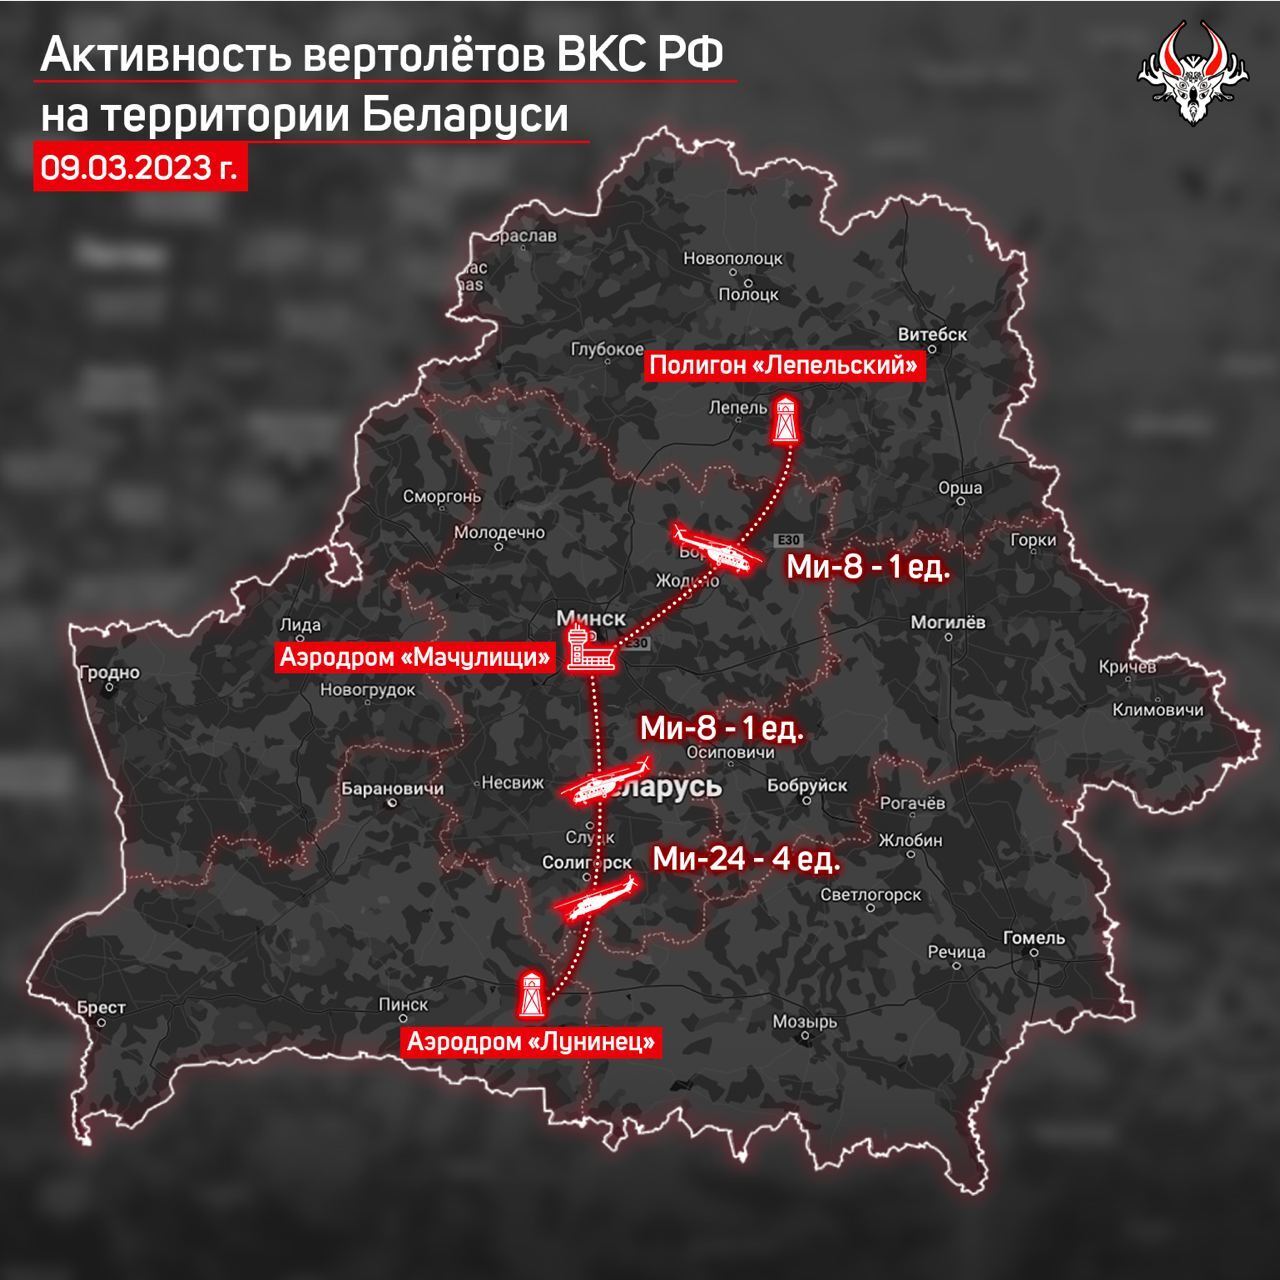 В Беларуси зафиксировали активность российских вертолетов, названы вероятные причины – СМИ